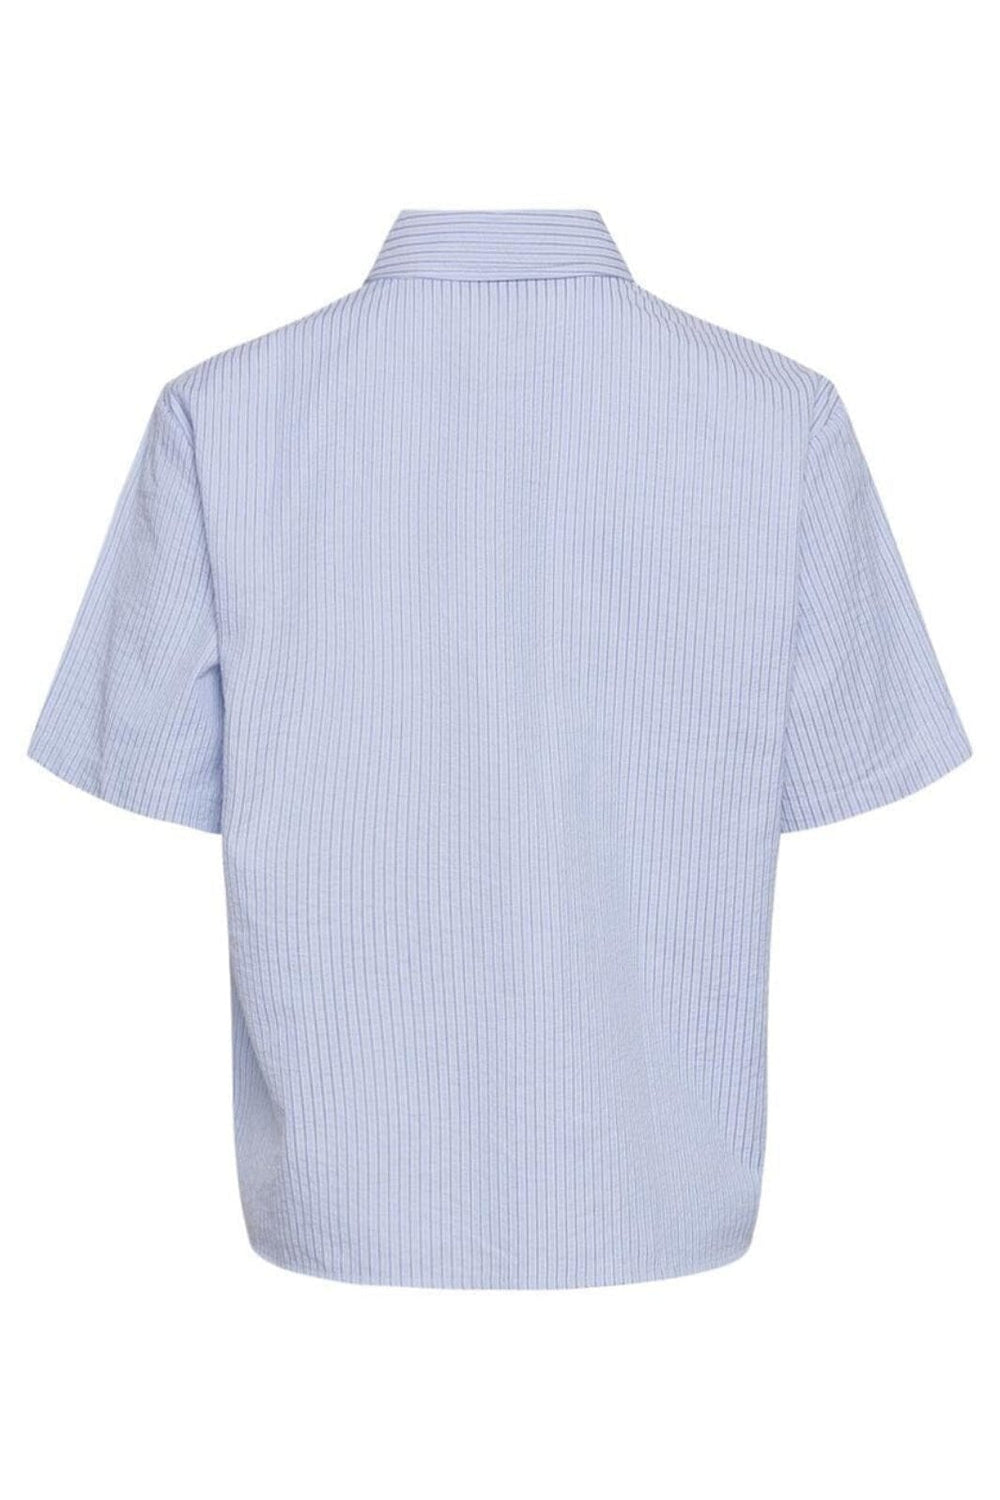 Noella - Rani Shirt - Light Blue Stripe Skjorter 